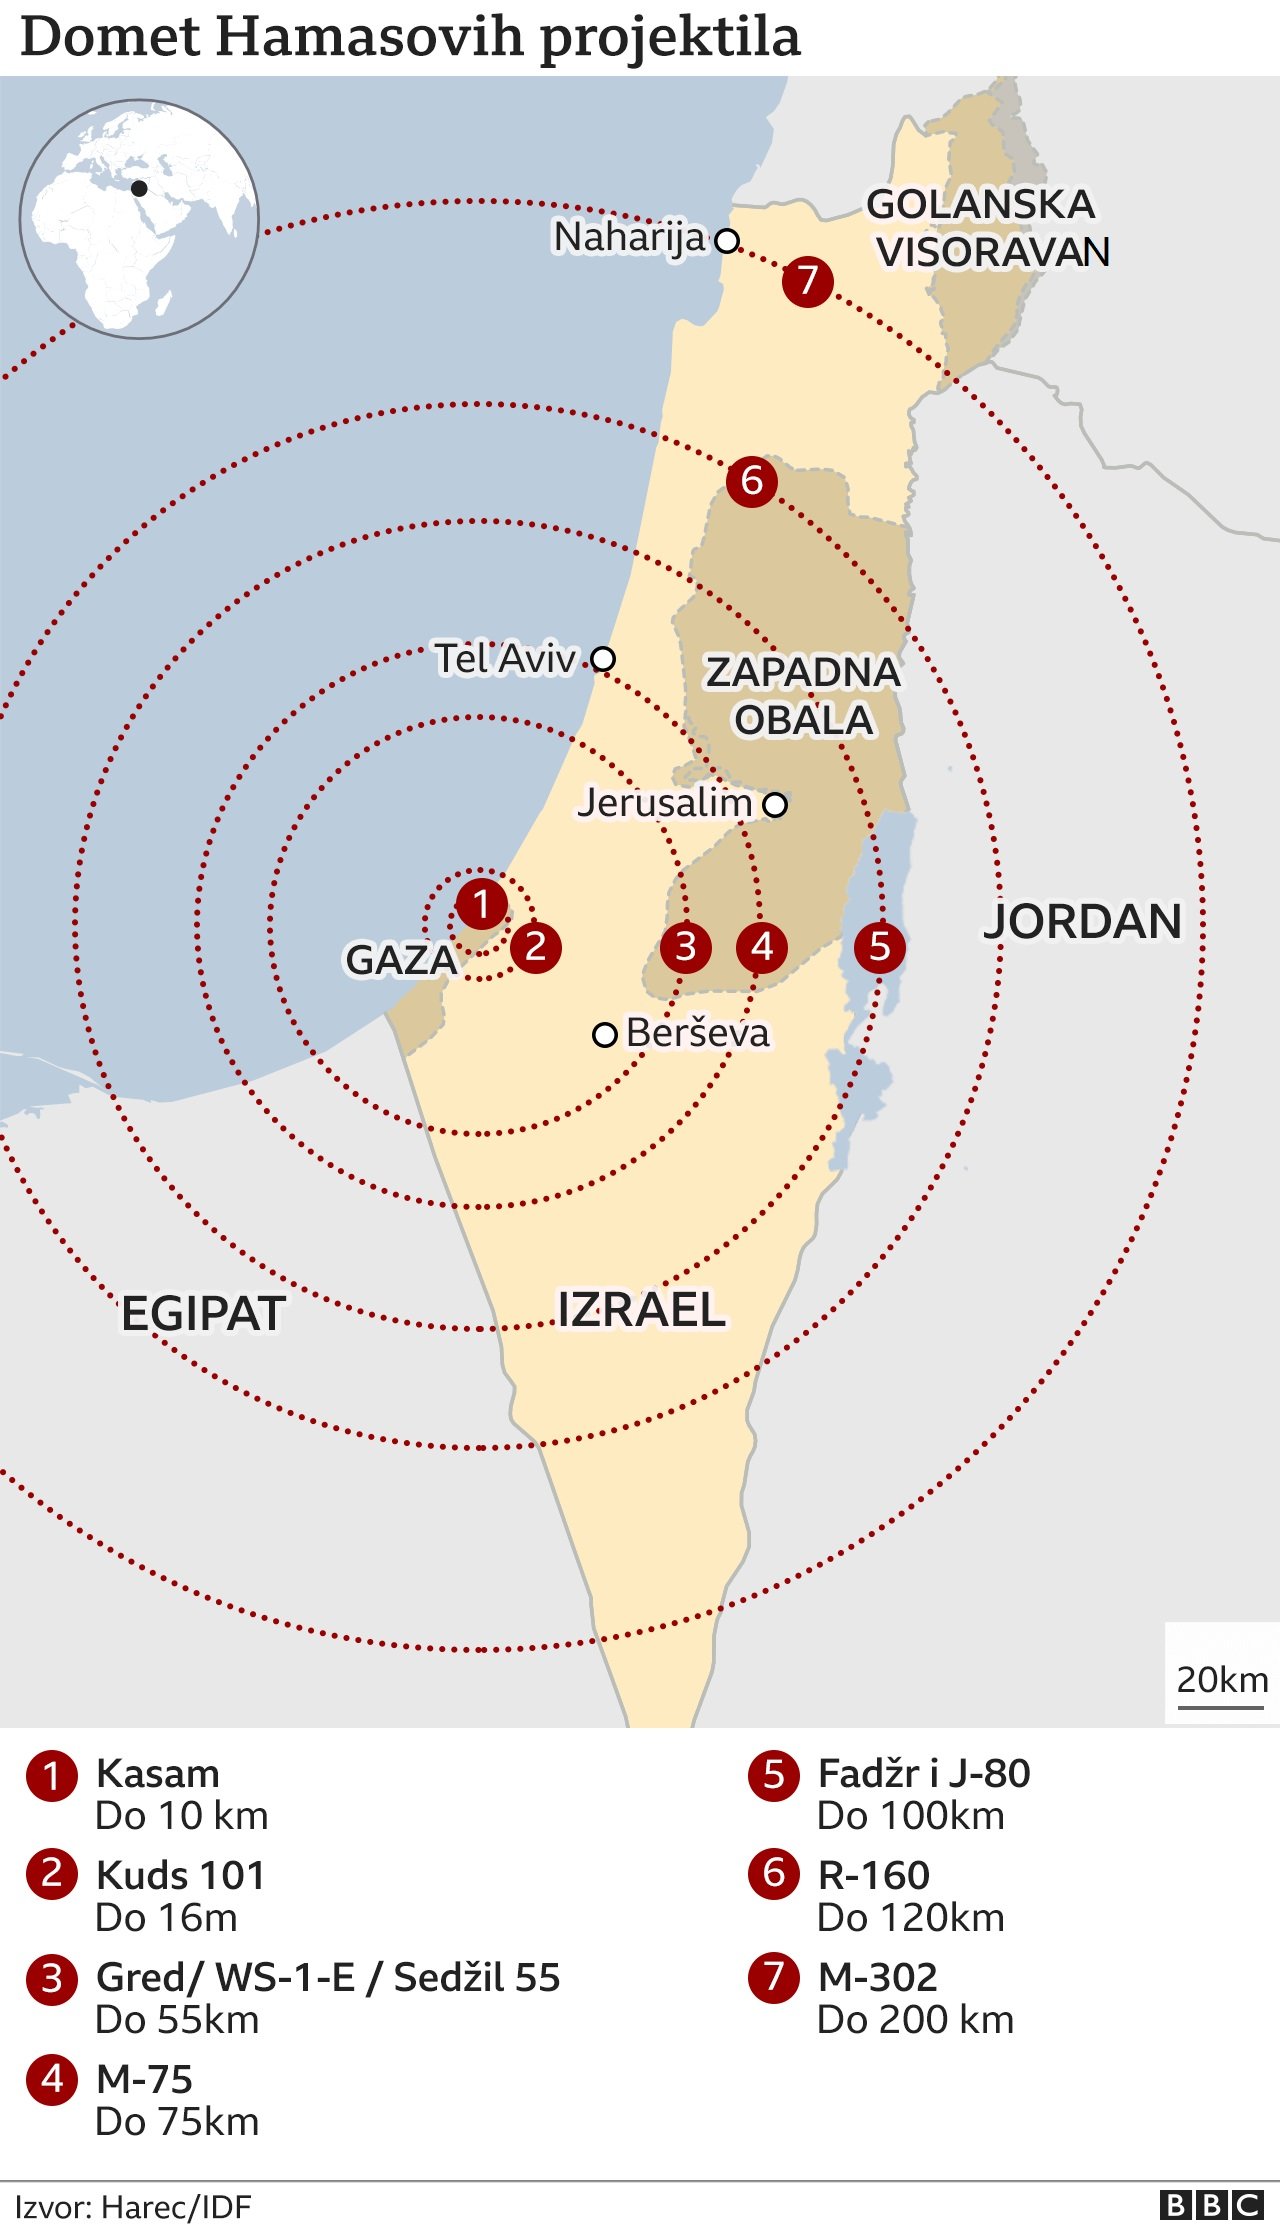 Domet Hamasovih raketa